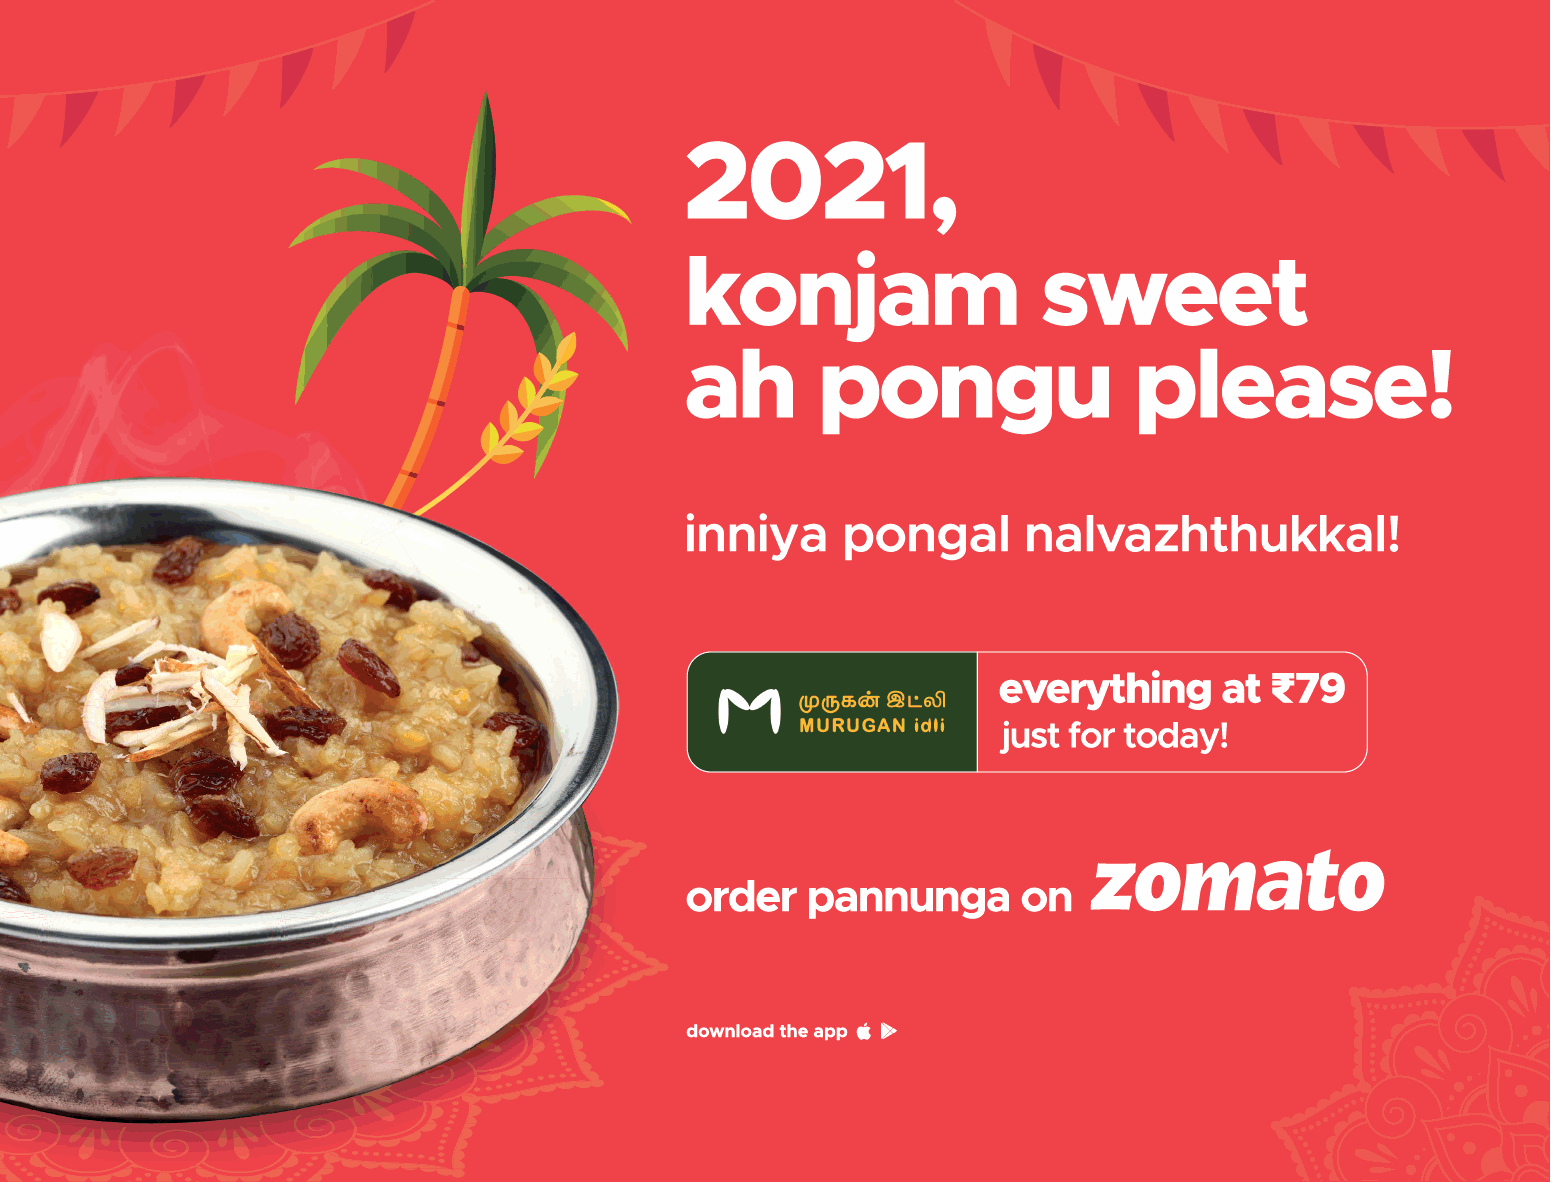 zomato-order-food-online-easily-ad-times-of-india-chennai-14-01-2021